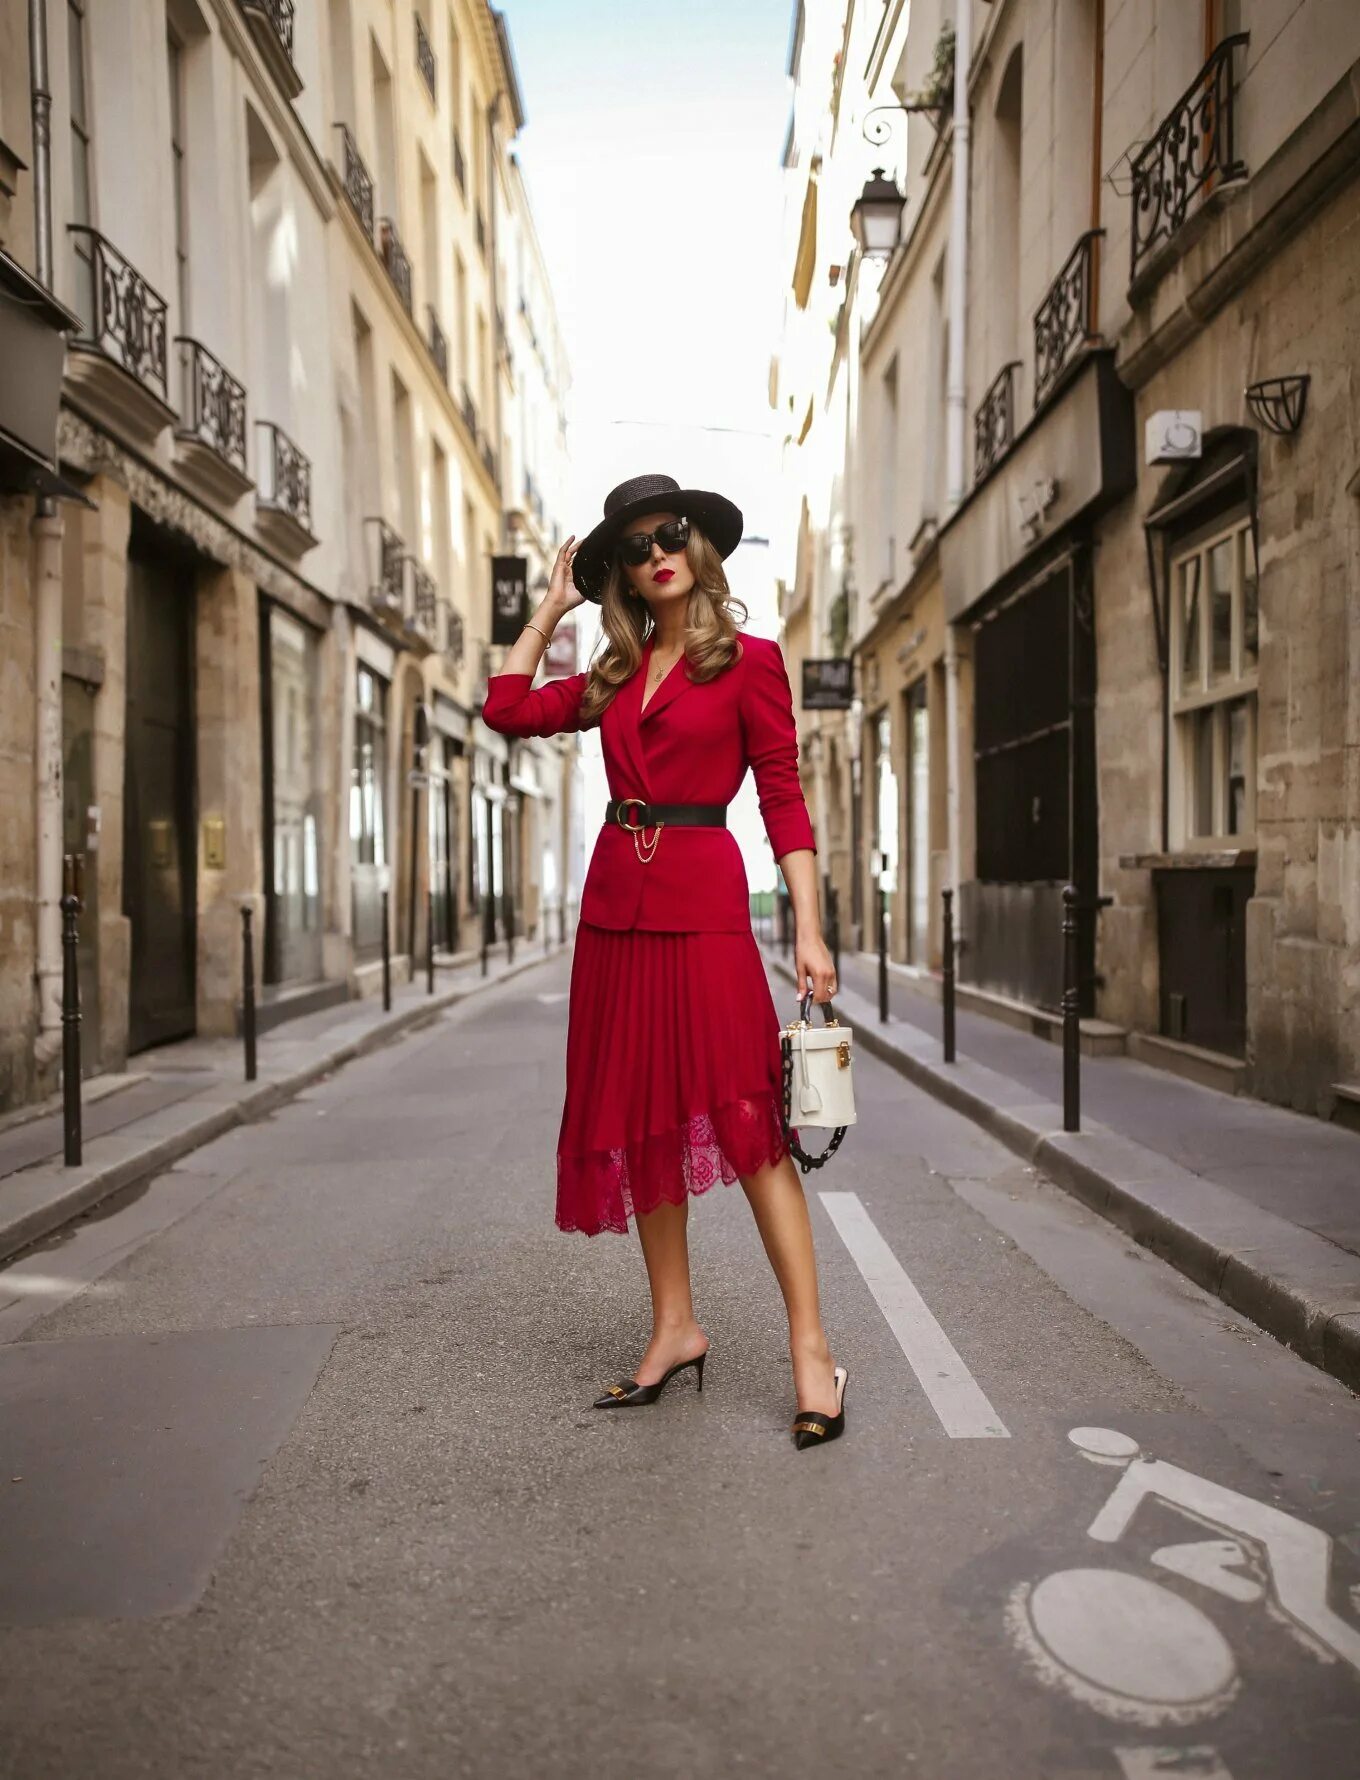 Парижский Гаврош стиль. Мода Парижа Франции стиль Парижский Шик. Парижский Шик стиль. Французский Шик утонченный образ парижанки.